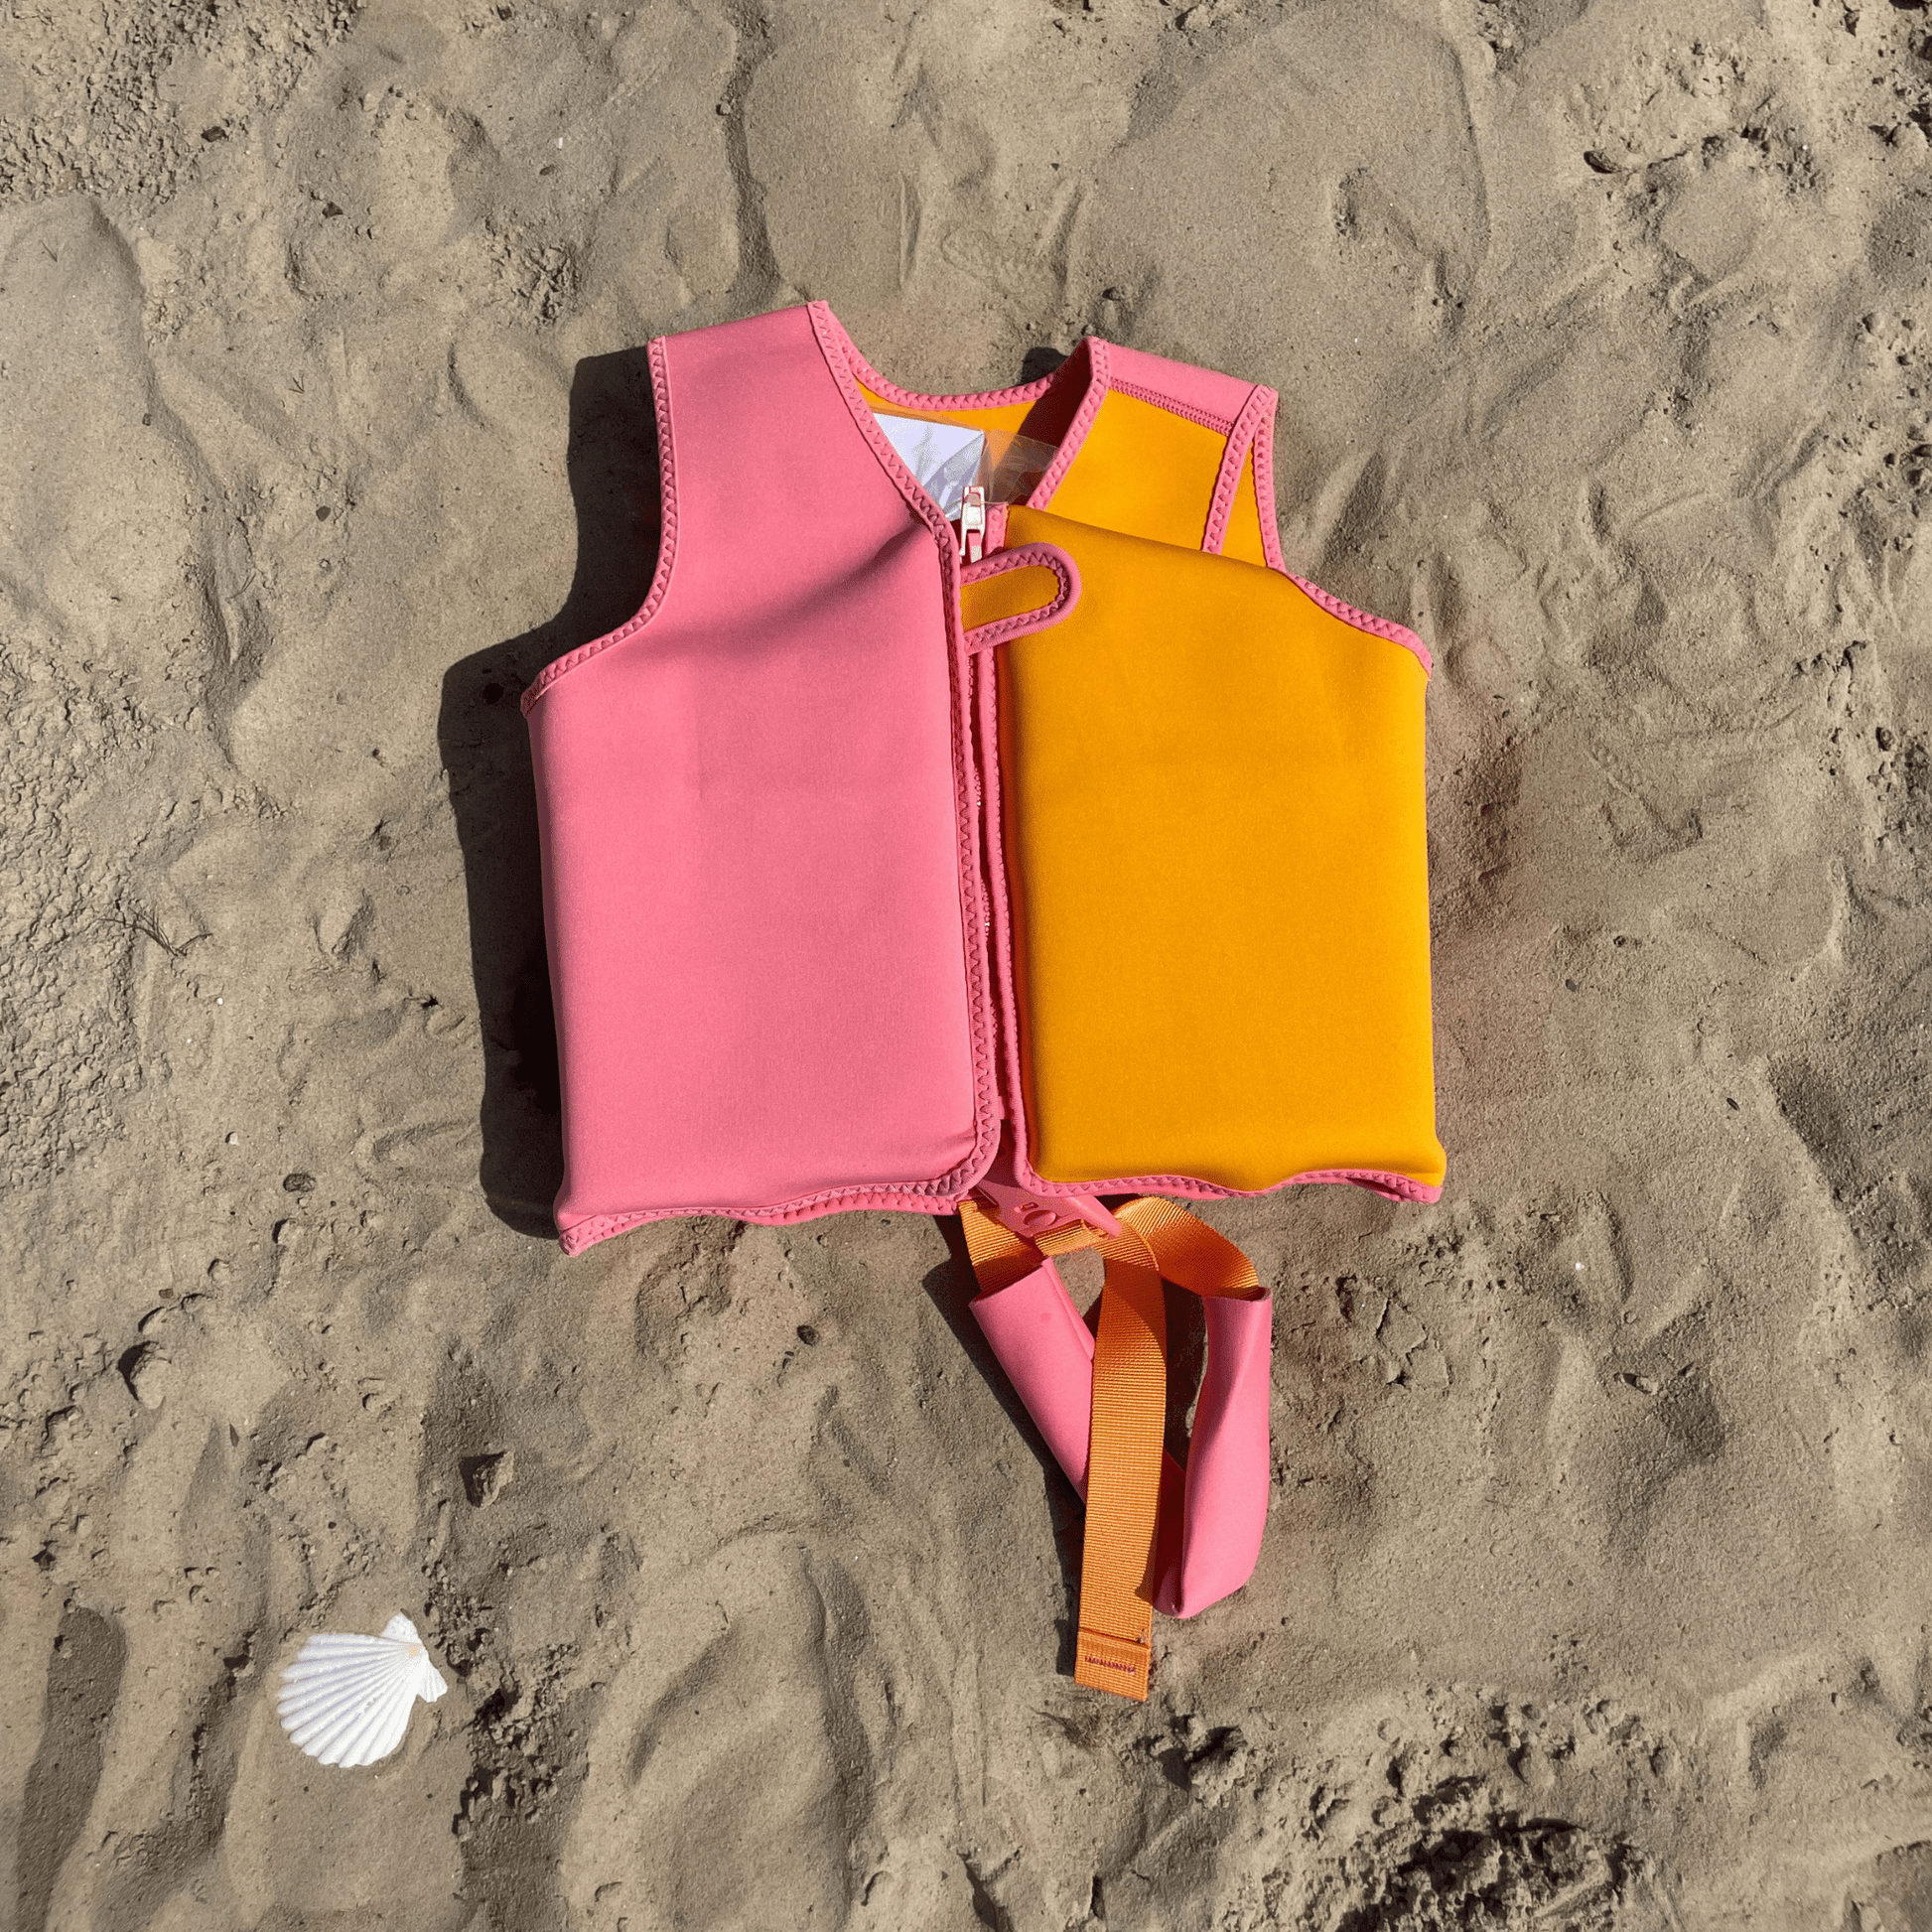 zwemvest-oranje-roze-3-6-jaar-swim-essentials-2